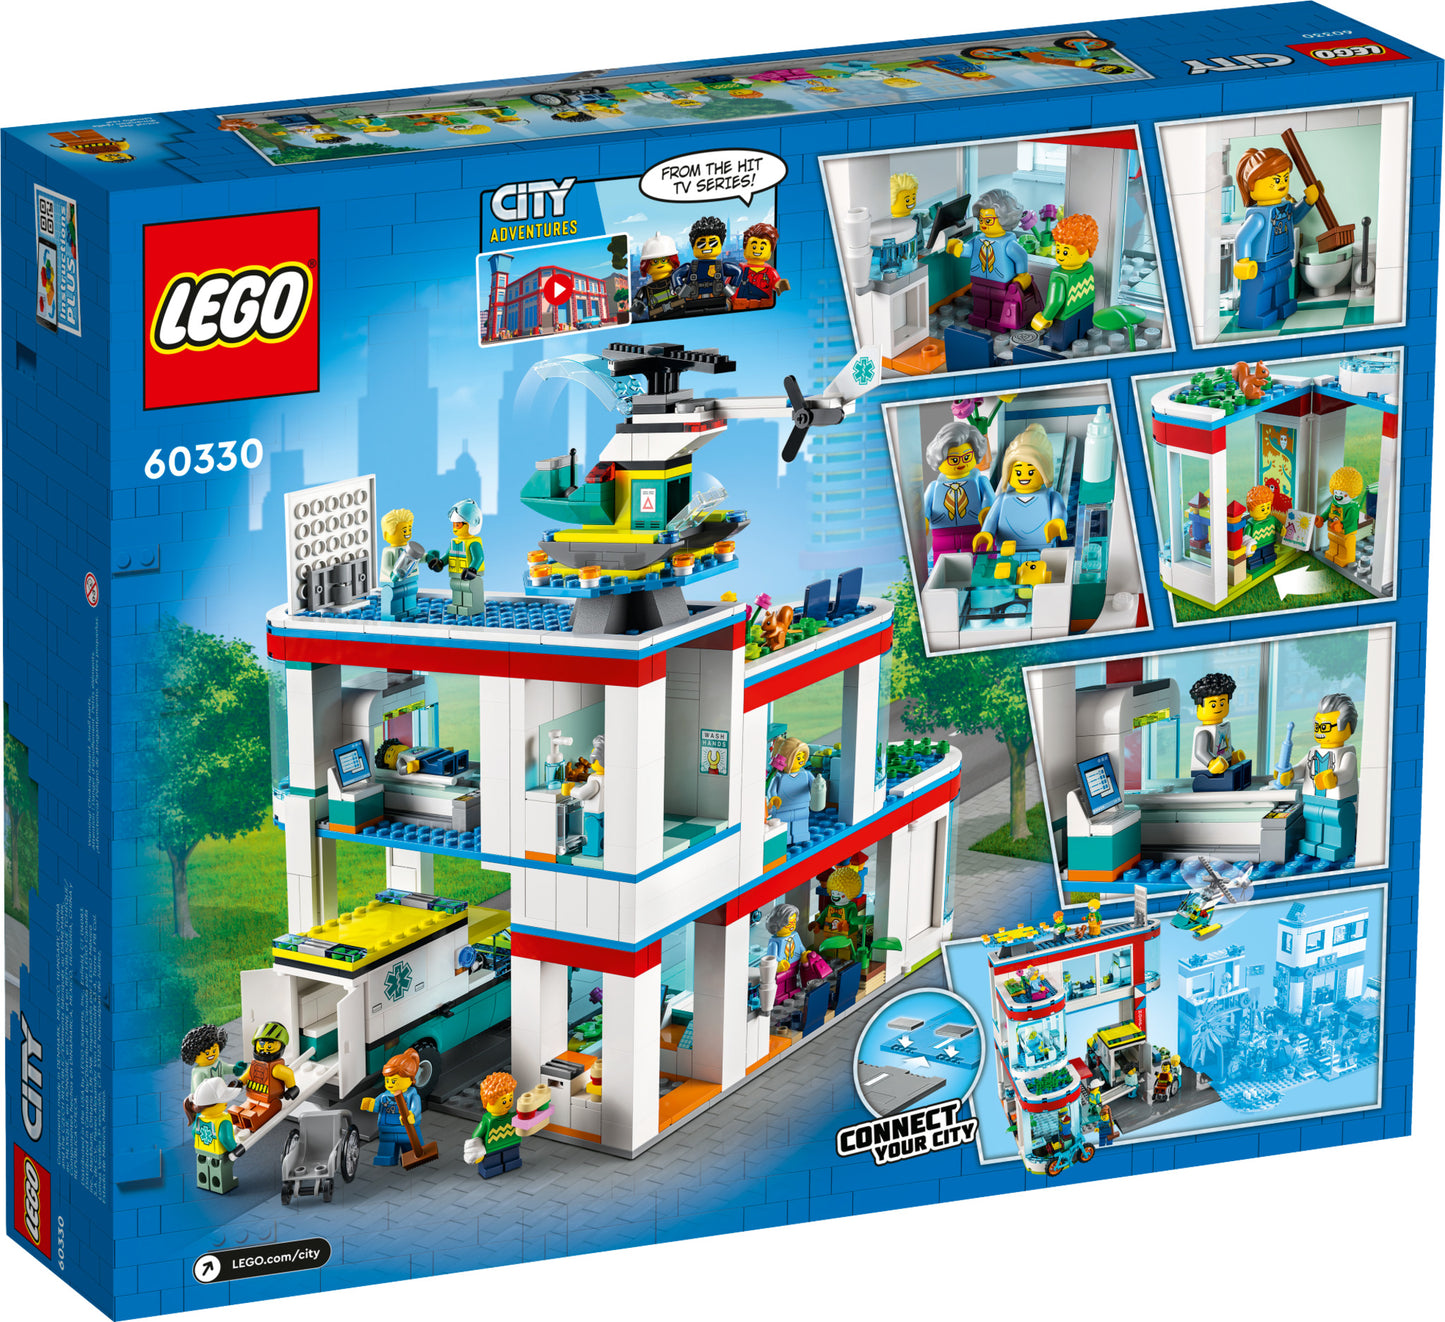 60330 LEGO City - Ospedale